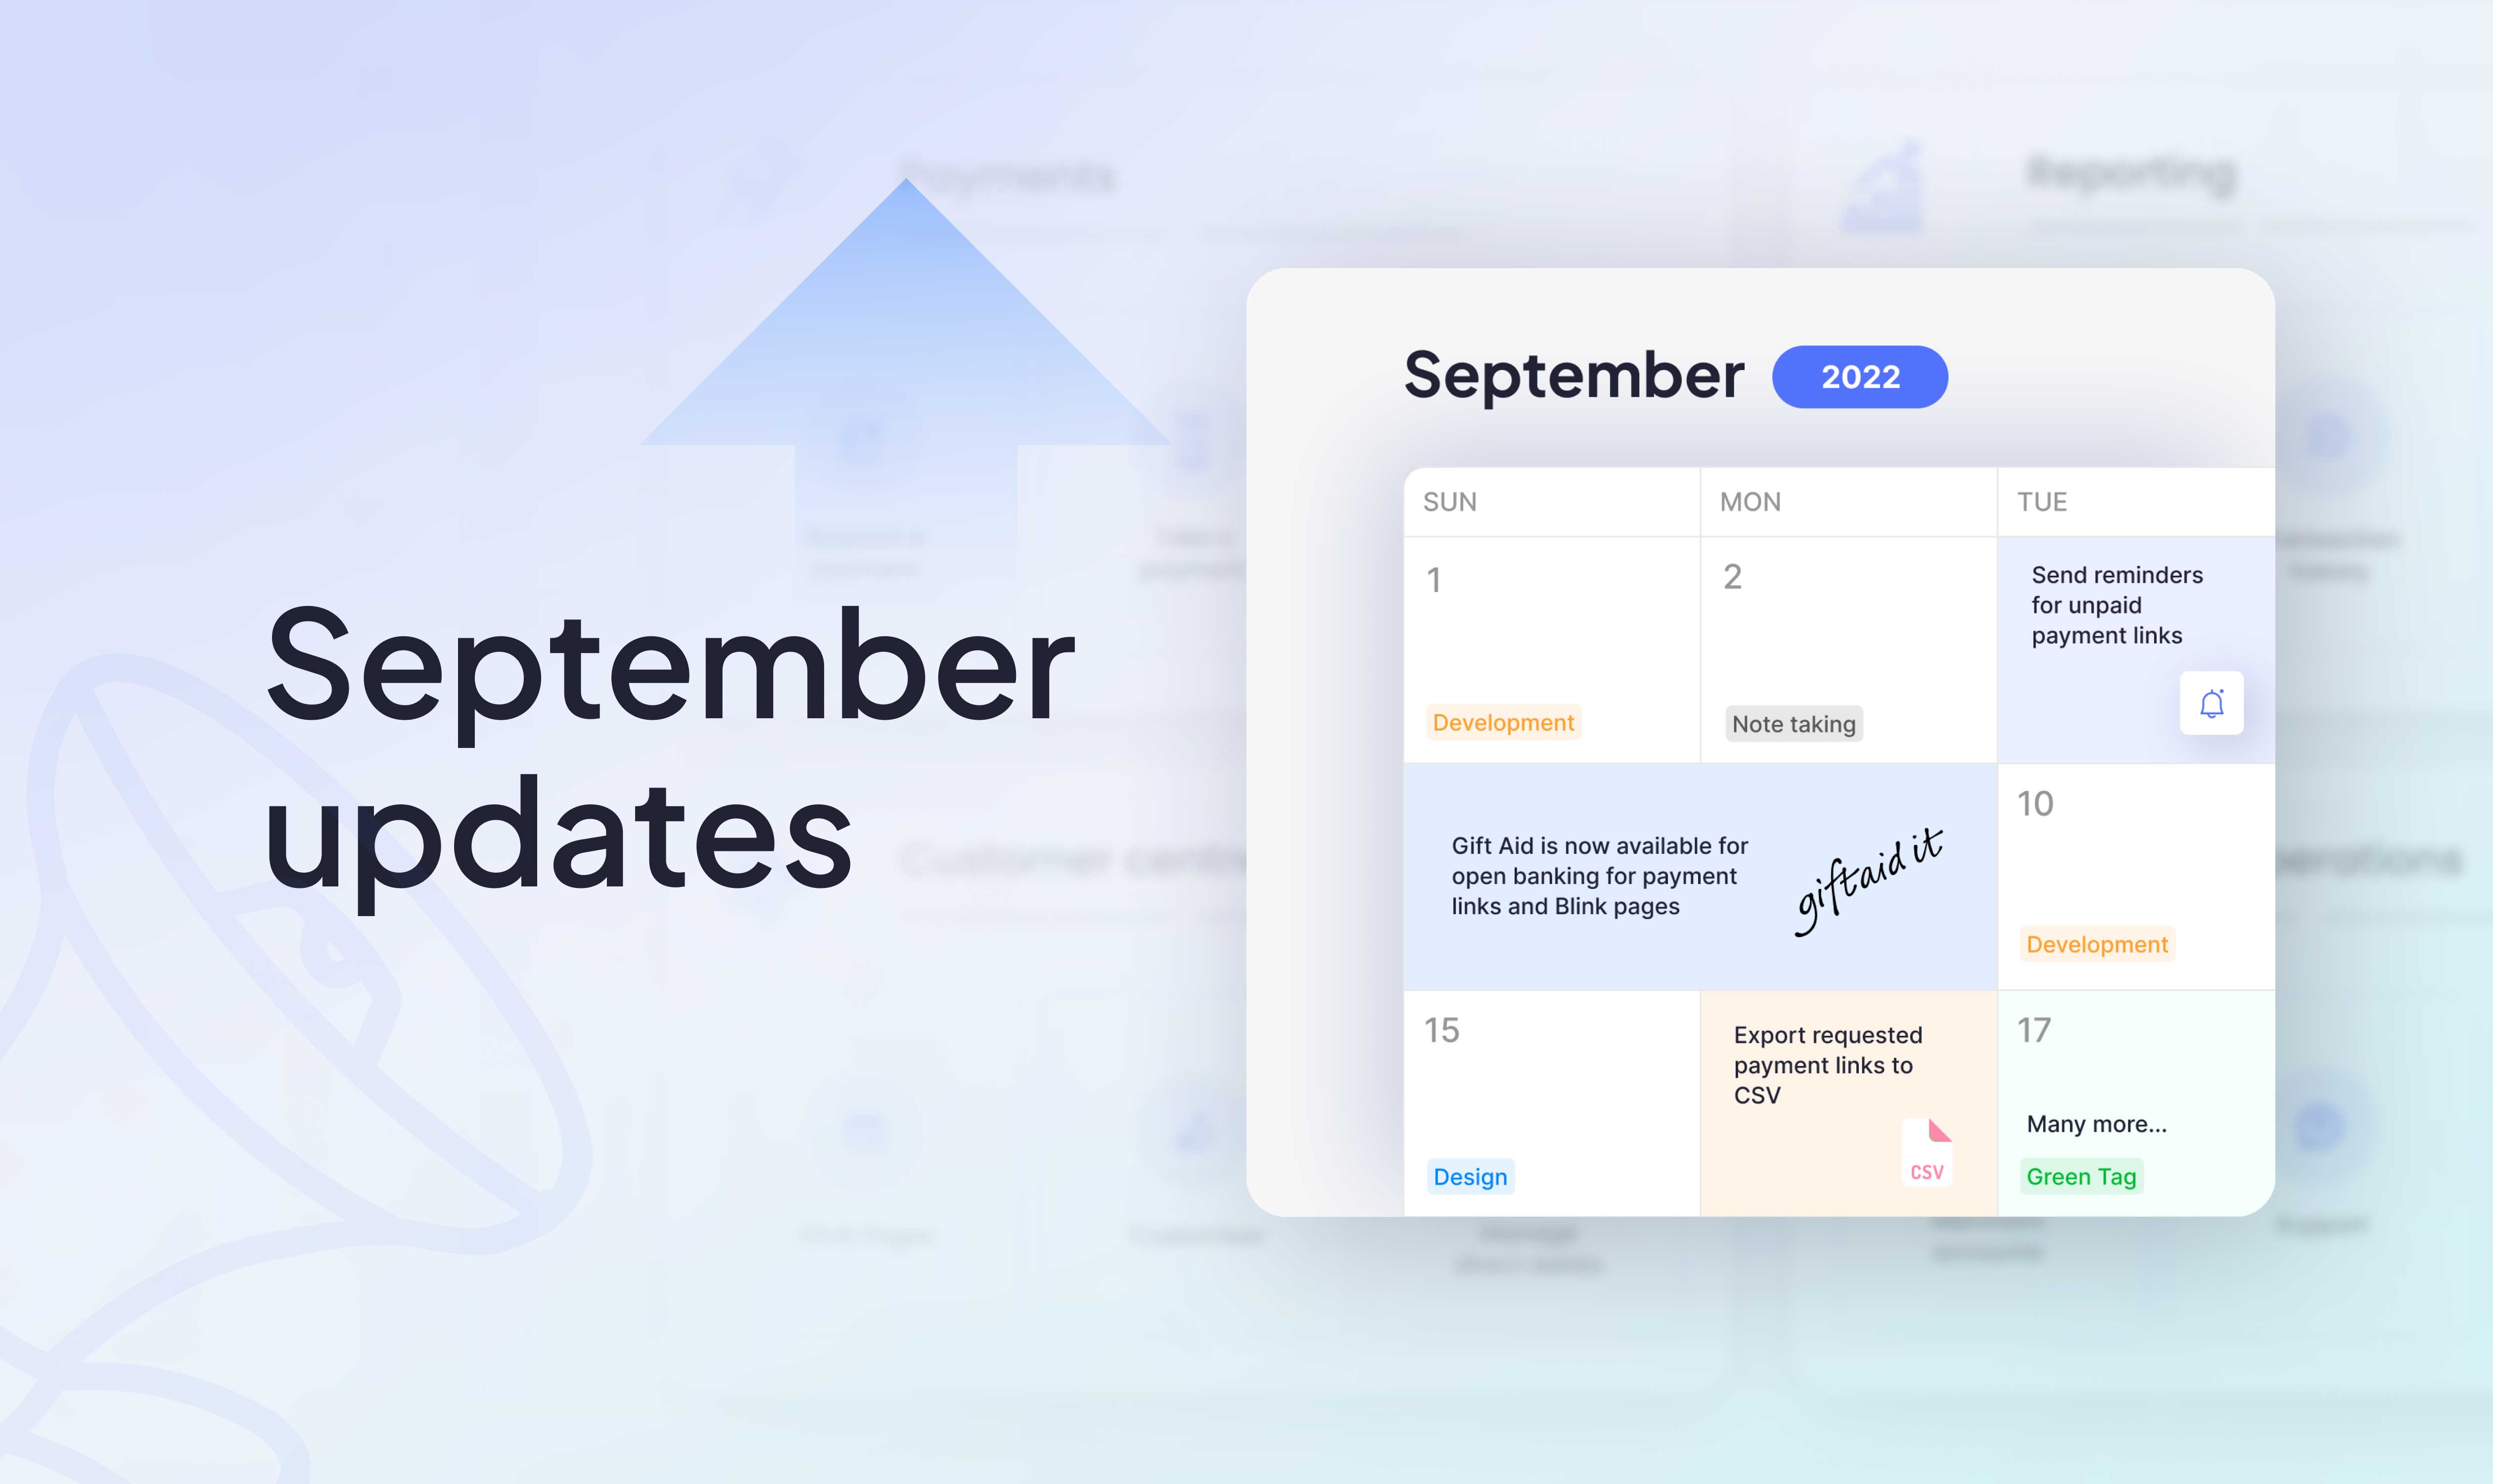 September updates